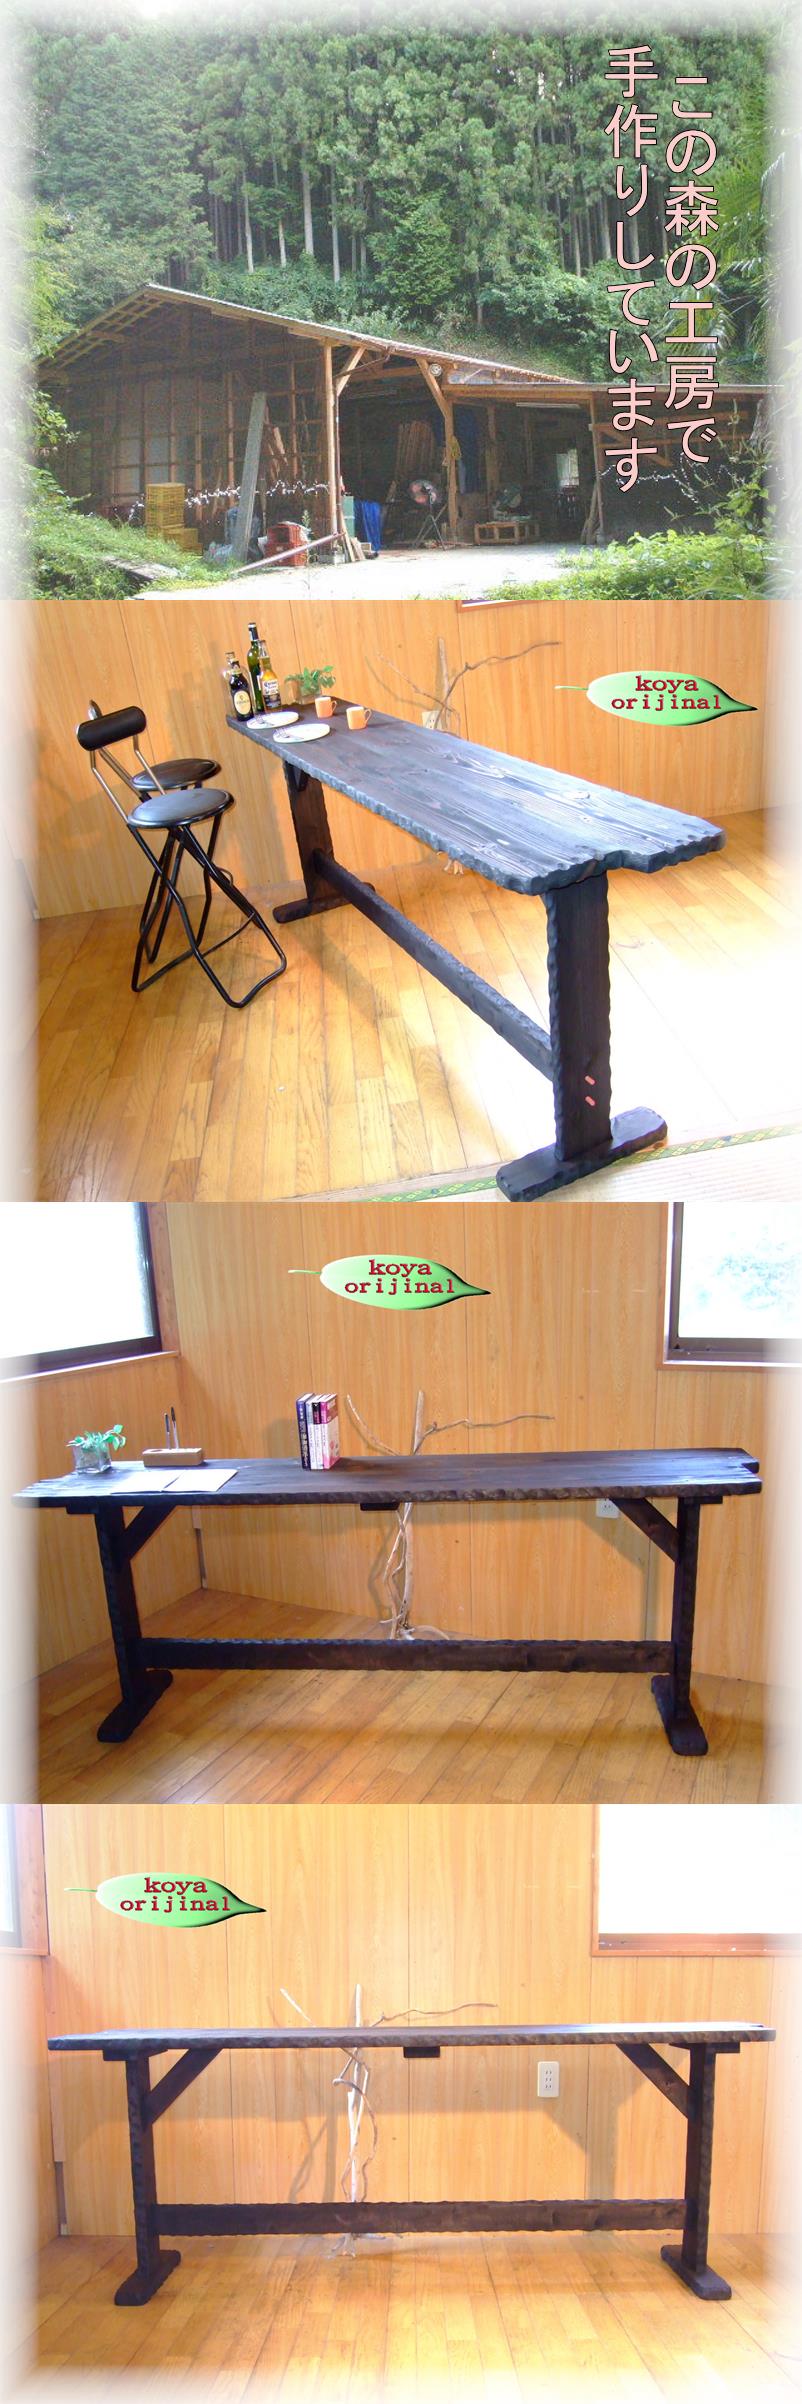 超美品 コヤ木工こだわり製作創りたて オリジナルカウンターテーブル